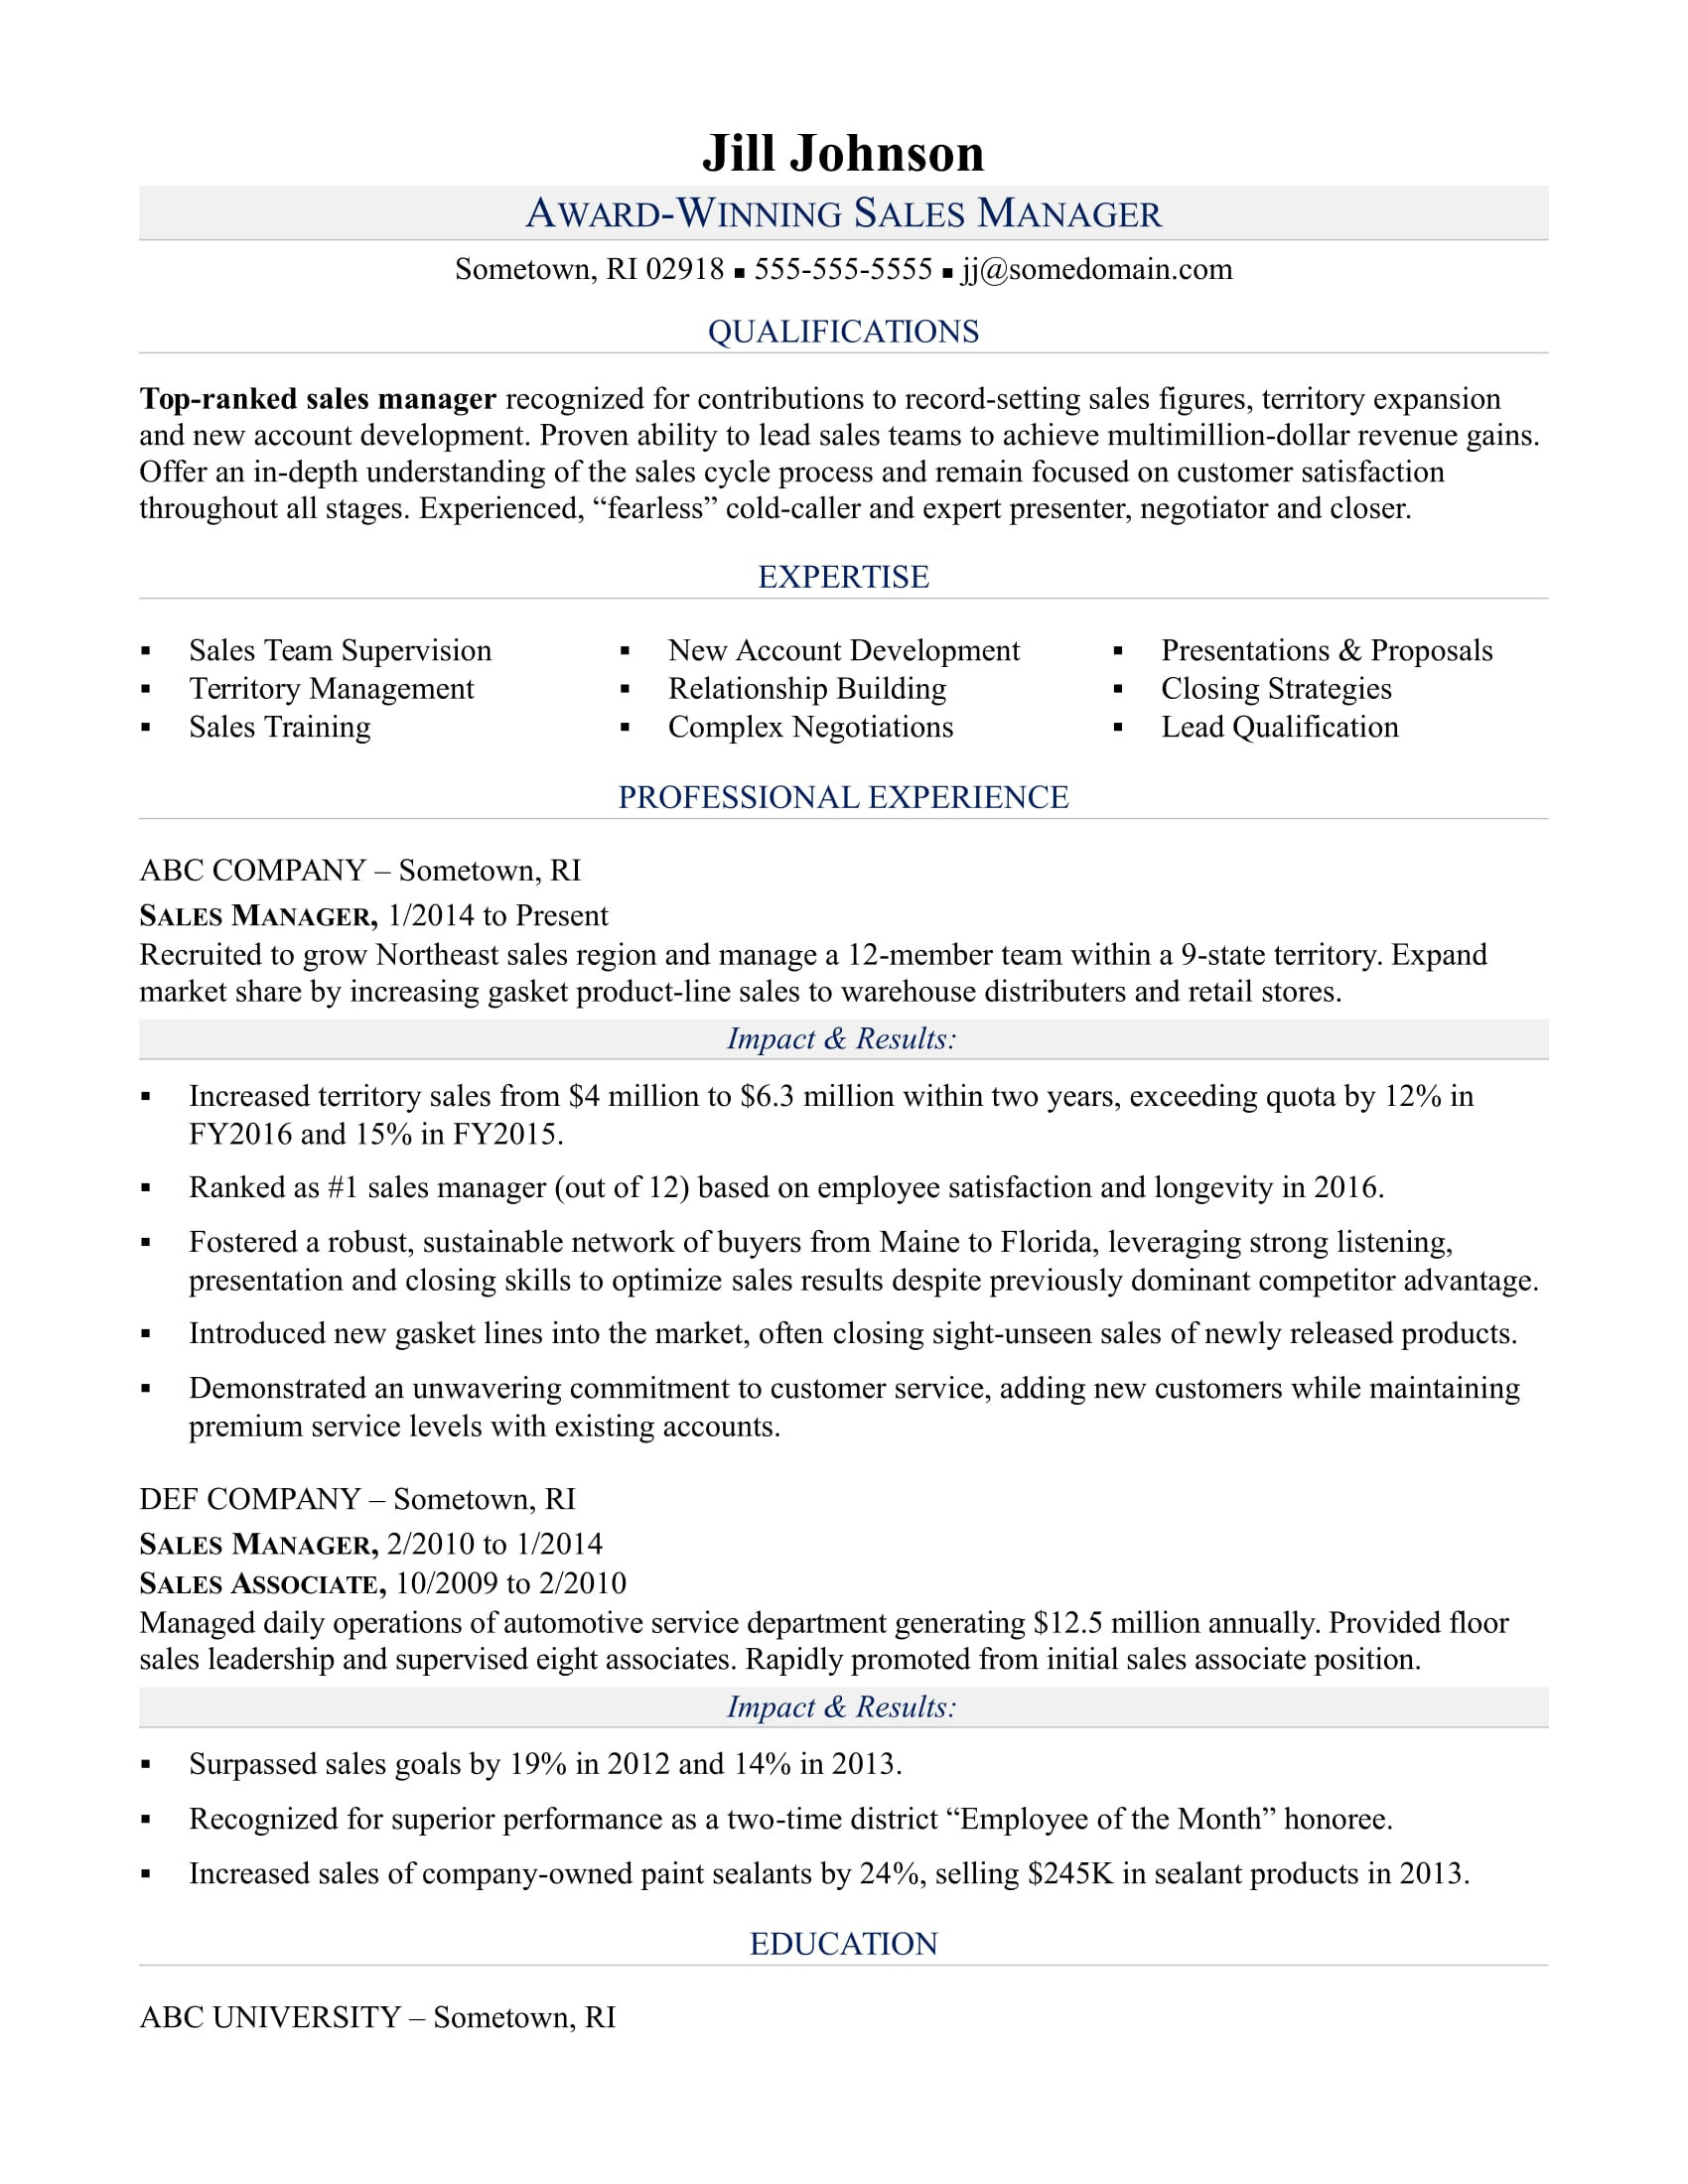 Sample Resume Objective Statements for Sales Sales Manager Resume Sample Monster.com